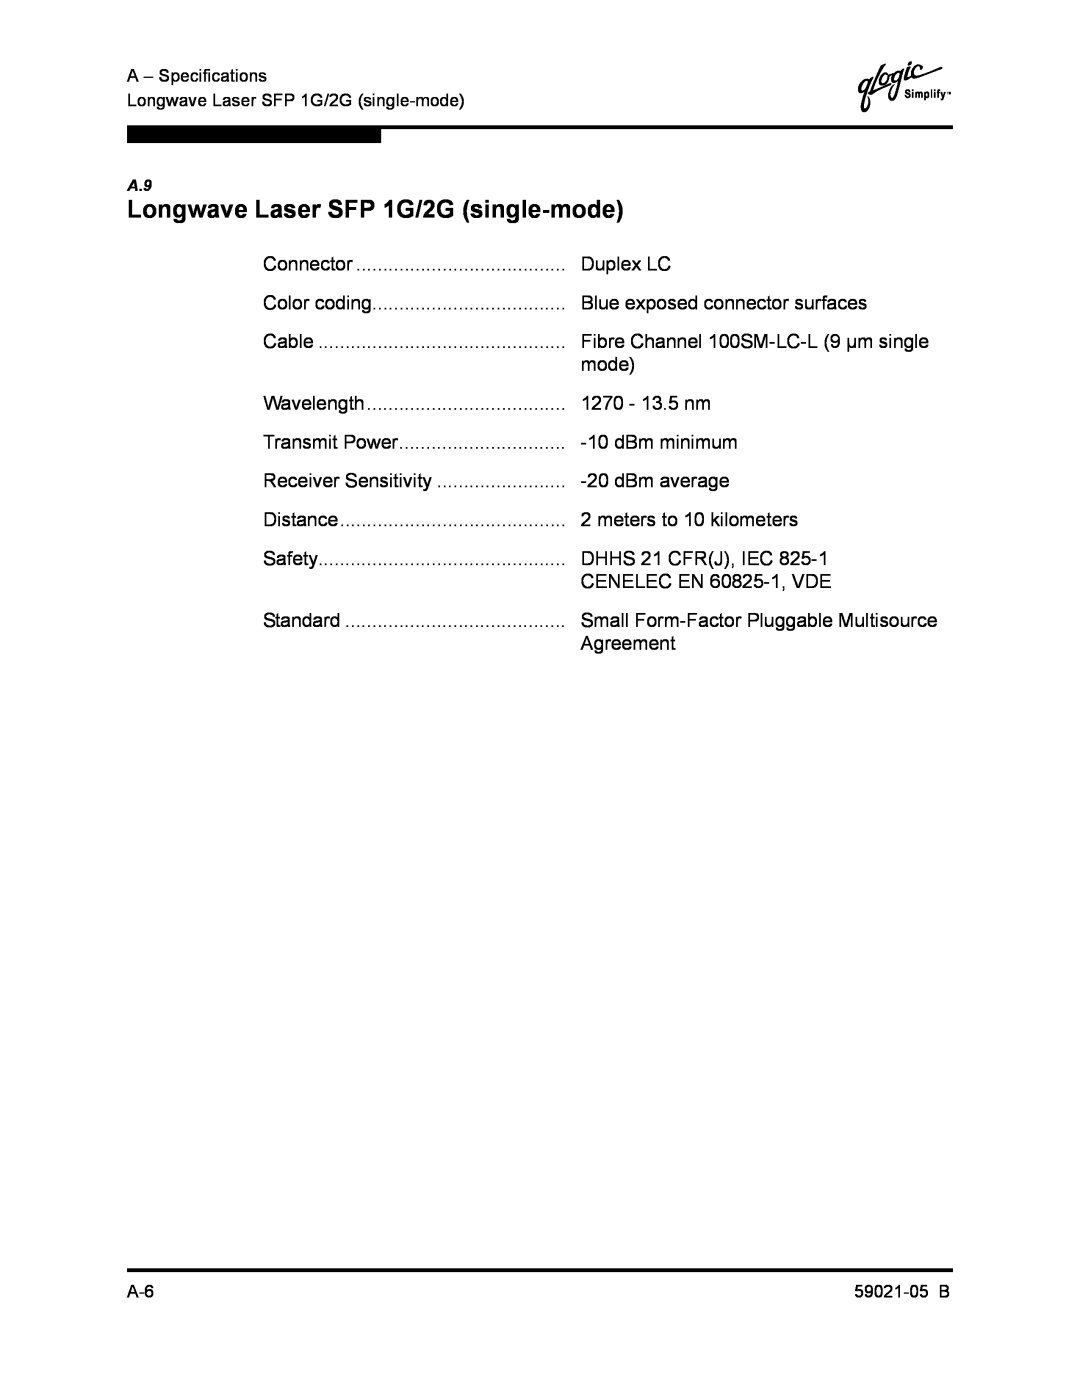 Q-Logic 59021-05 B manual Longwave Laser SFP 1G/2G single-mode 